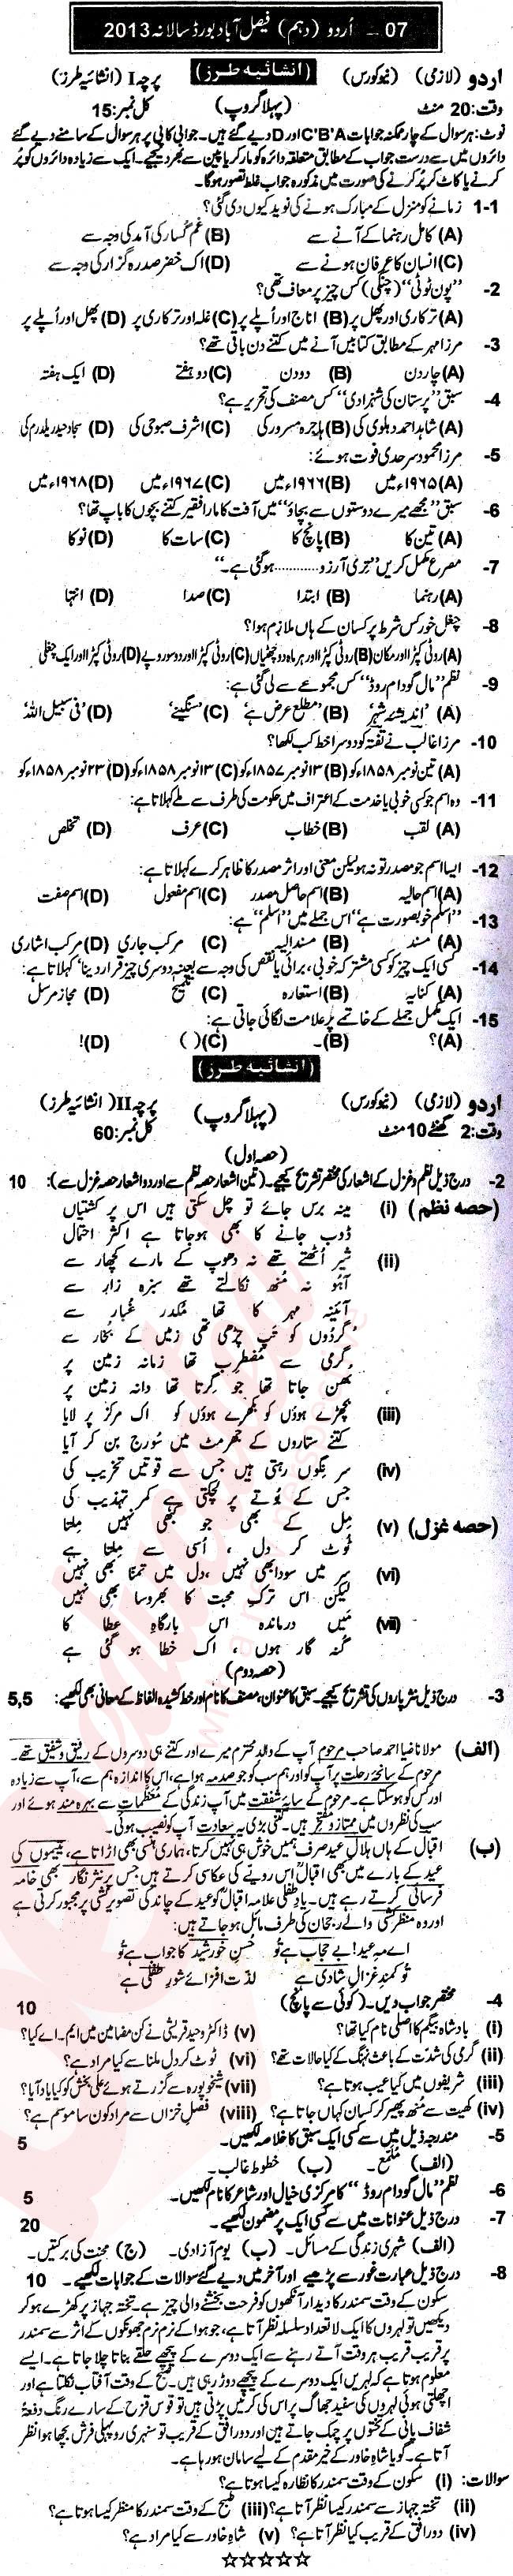 Urdu 10th Urdu Medium Past Paper Group 1 BISE Faisalabad 2013